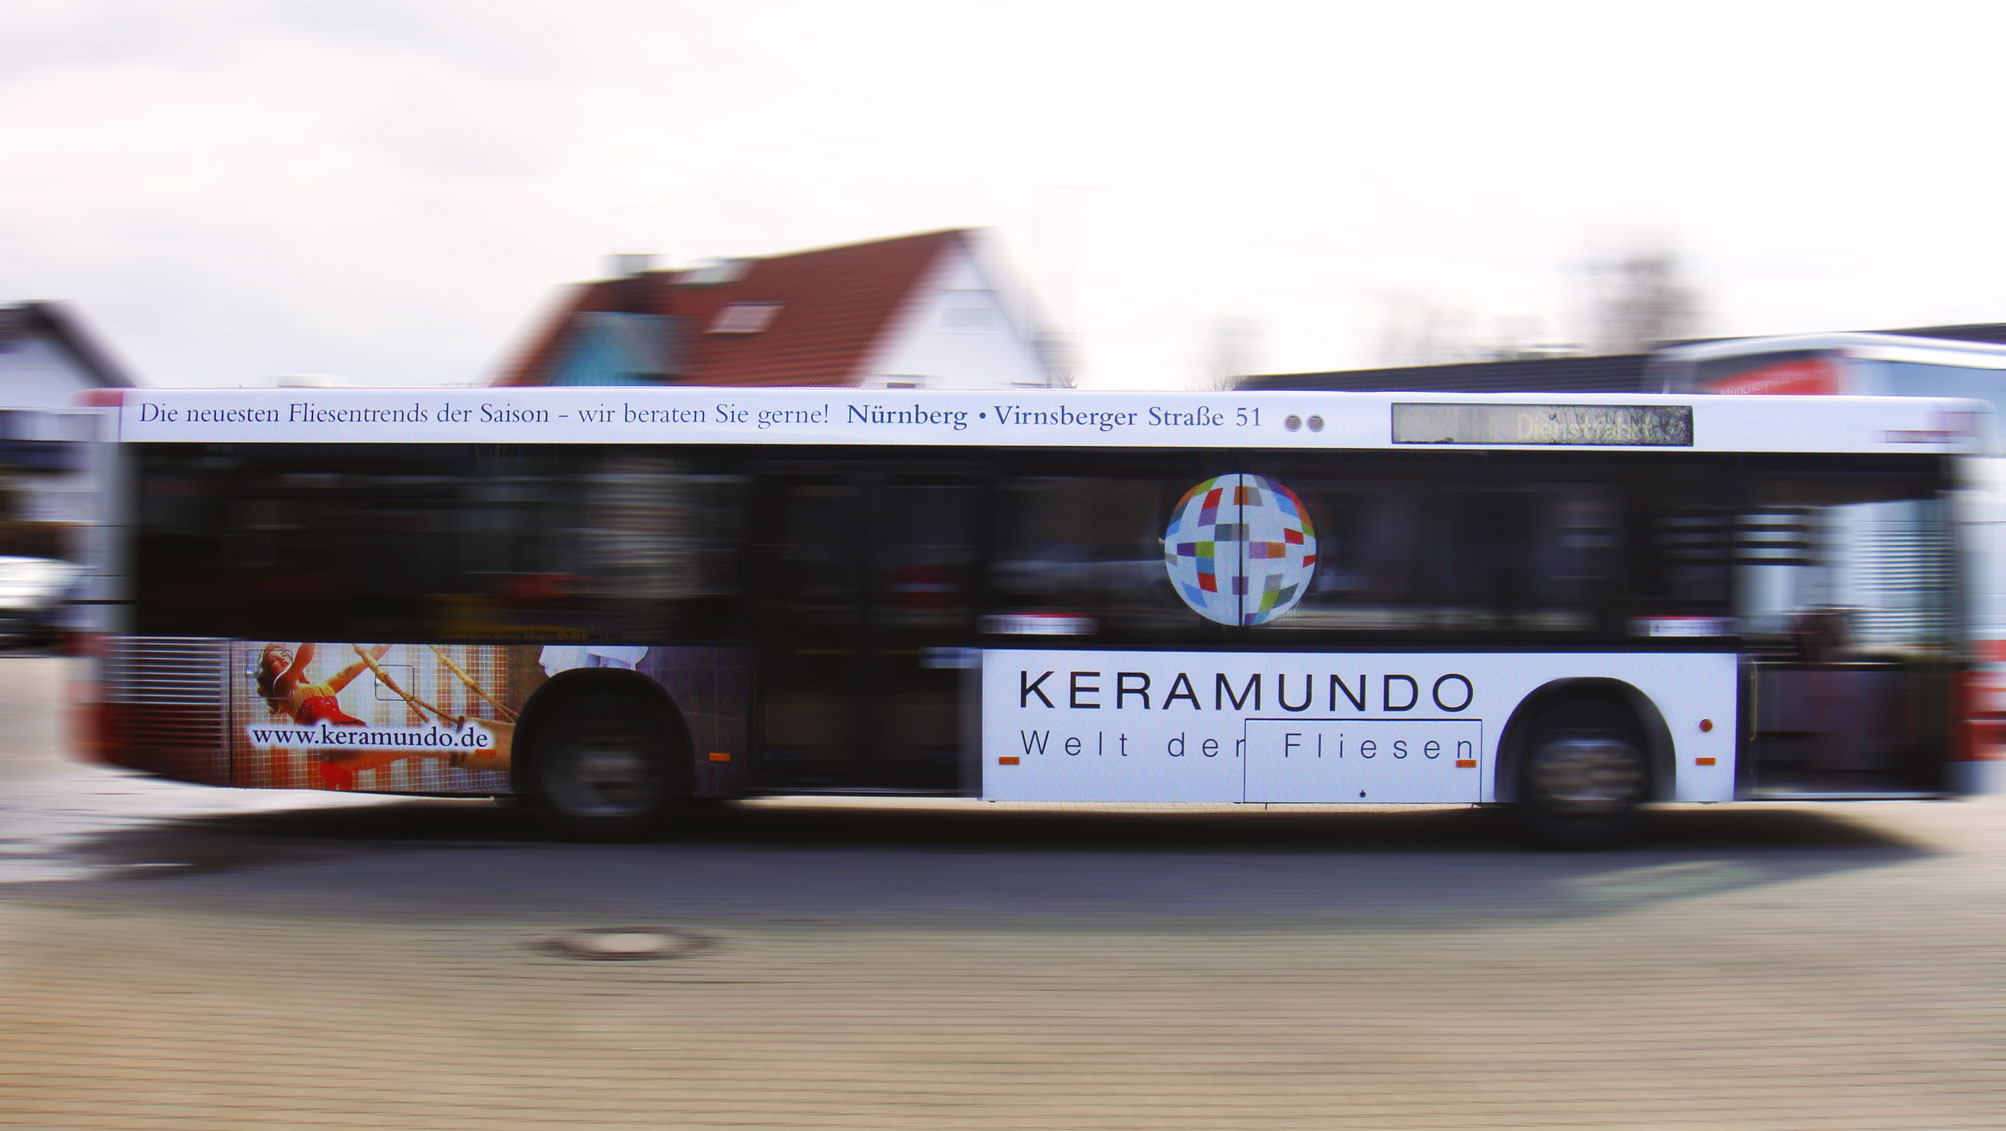 Buswerbung - Keramundo - Einstiegsseite